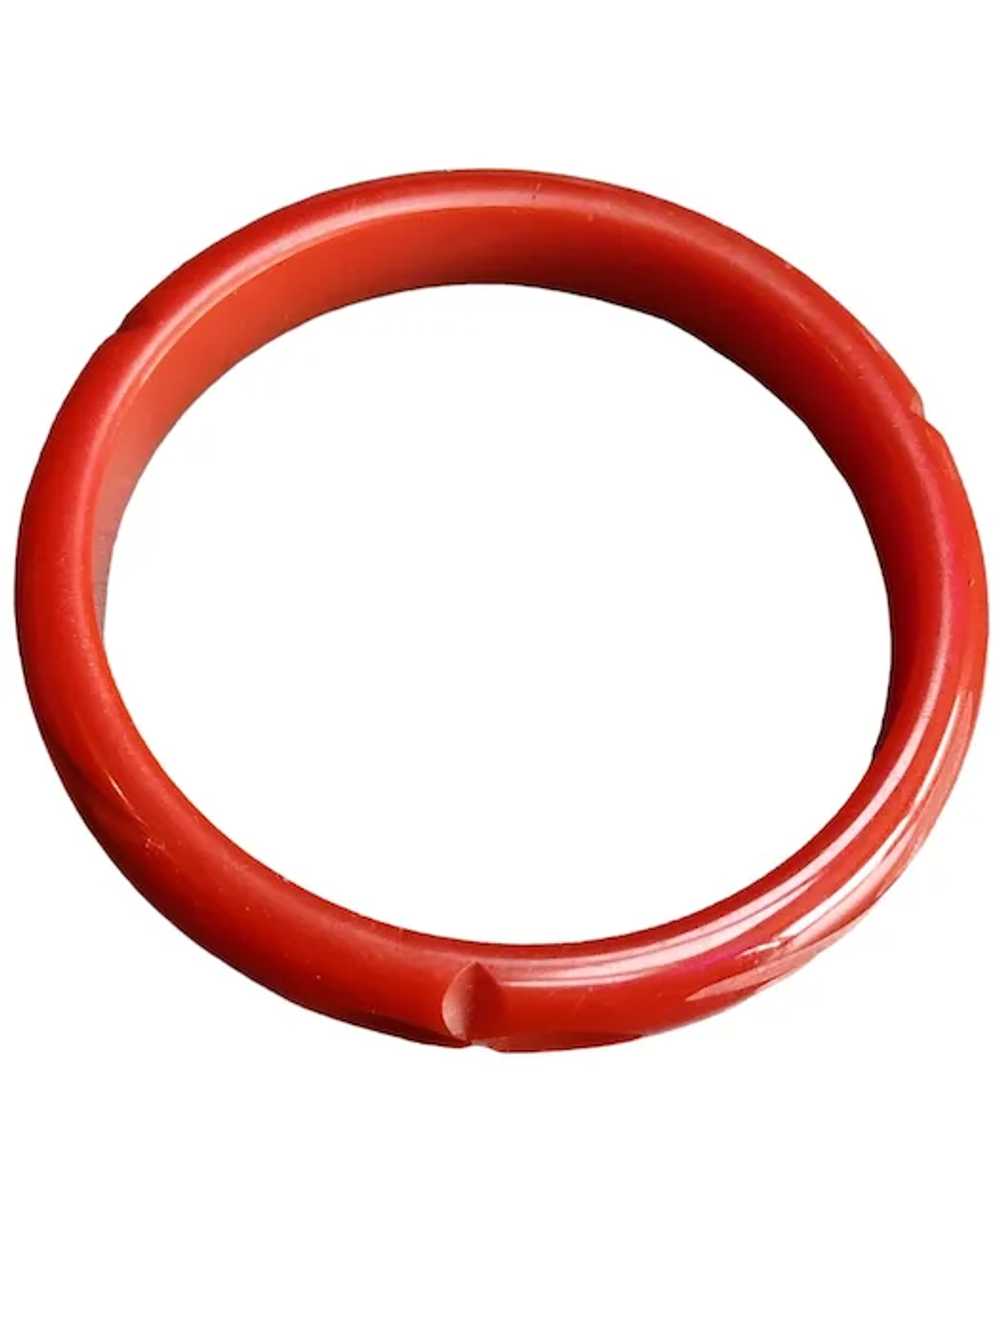 Vintage Bakelite Red Bangle Bracelet (A3815) - image 4